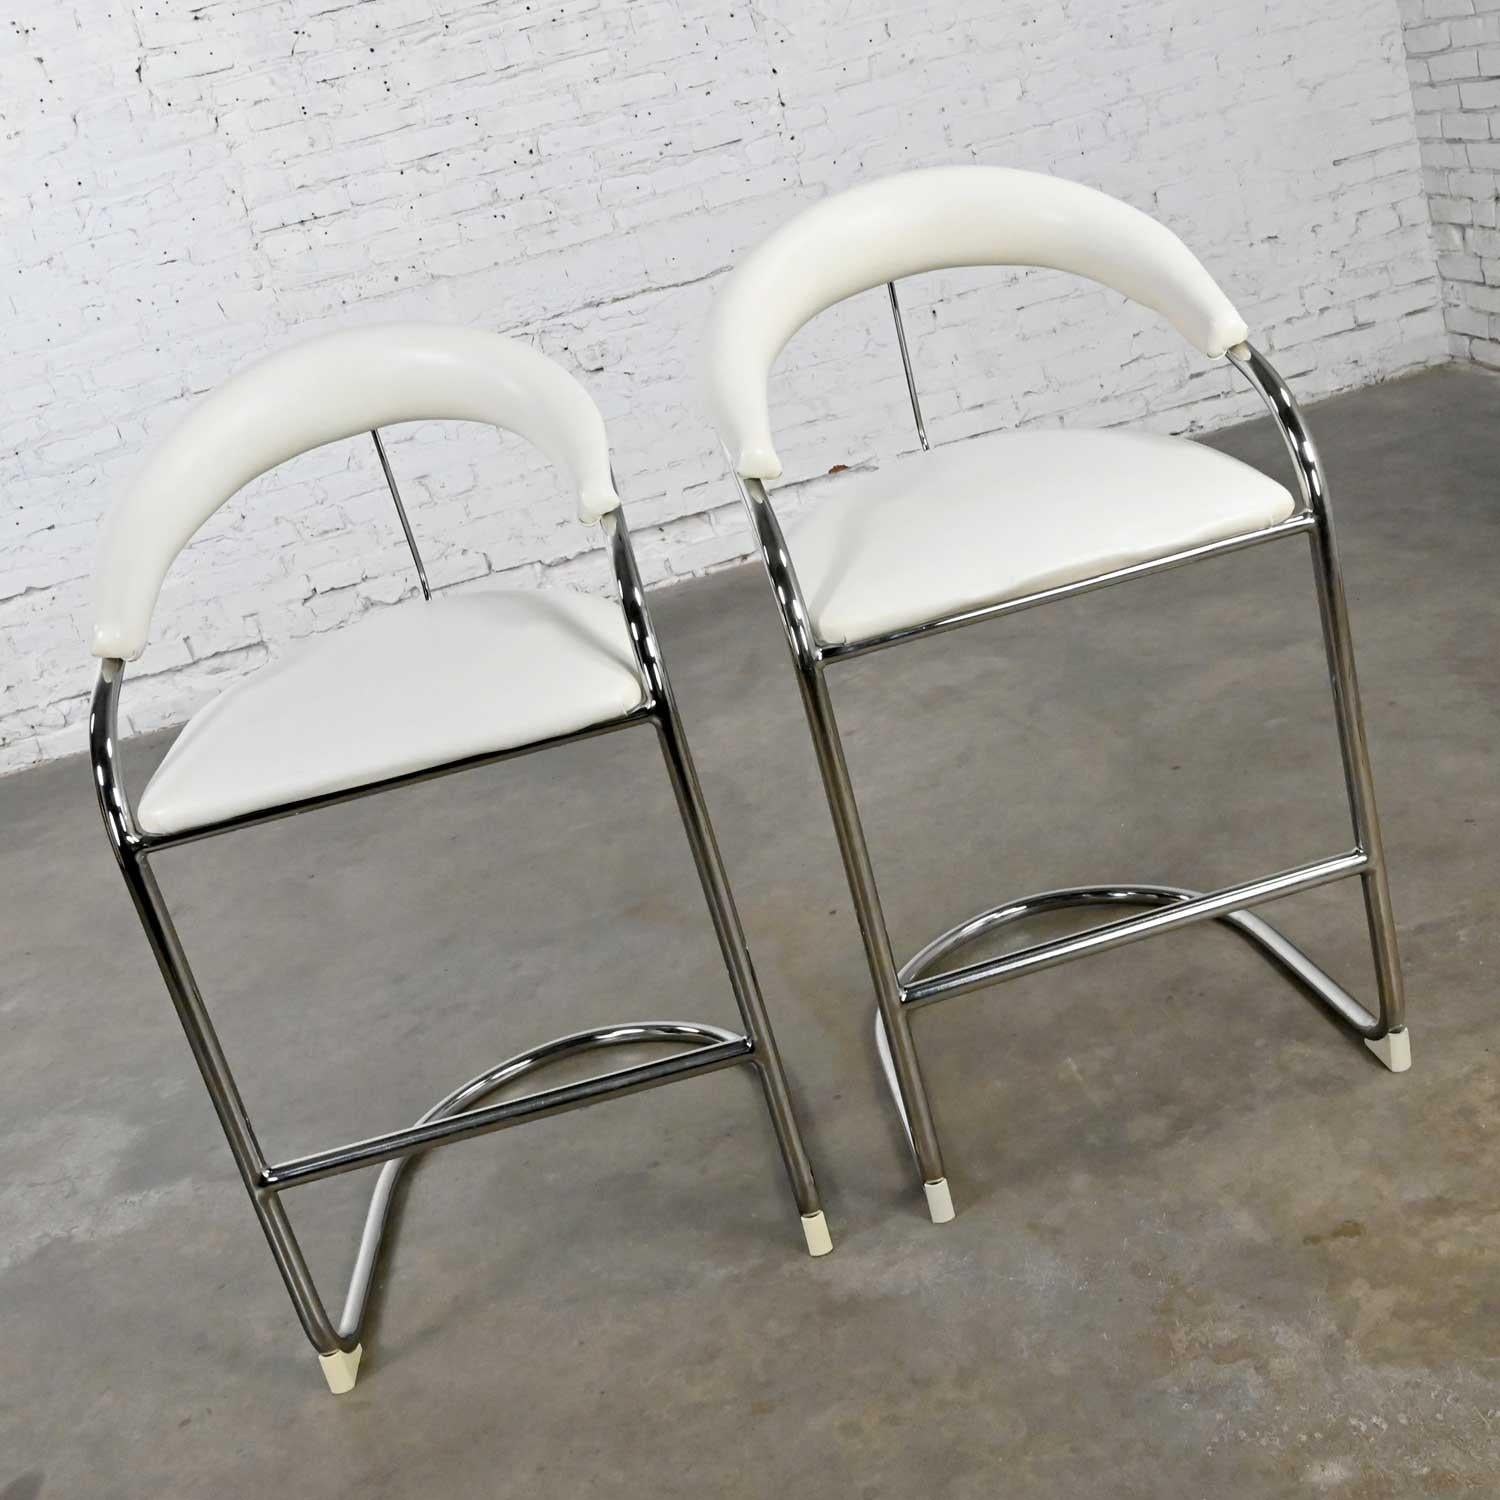 Fabuleuse paire de tabourets de bar vintage en vinyle blanc et tube chromé de Thonet dans le style de la chaise cantilever Bauhaus modèle SS33 d'Anton Lorenz. Magnifique état, en gardant à l'esprit que ces articles sont vintage et ne sont pas neufs,